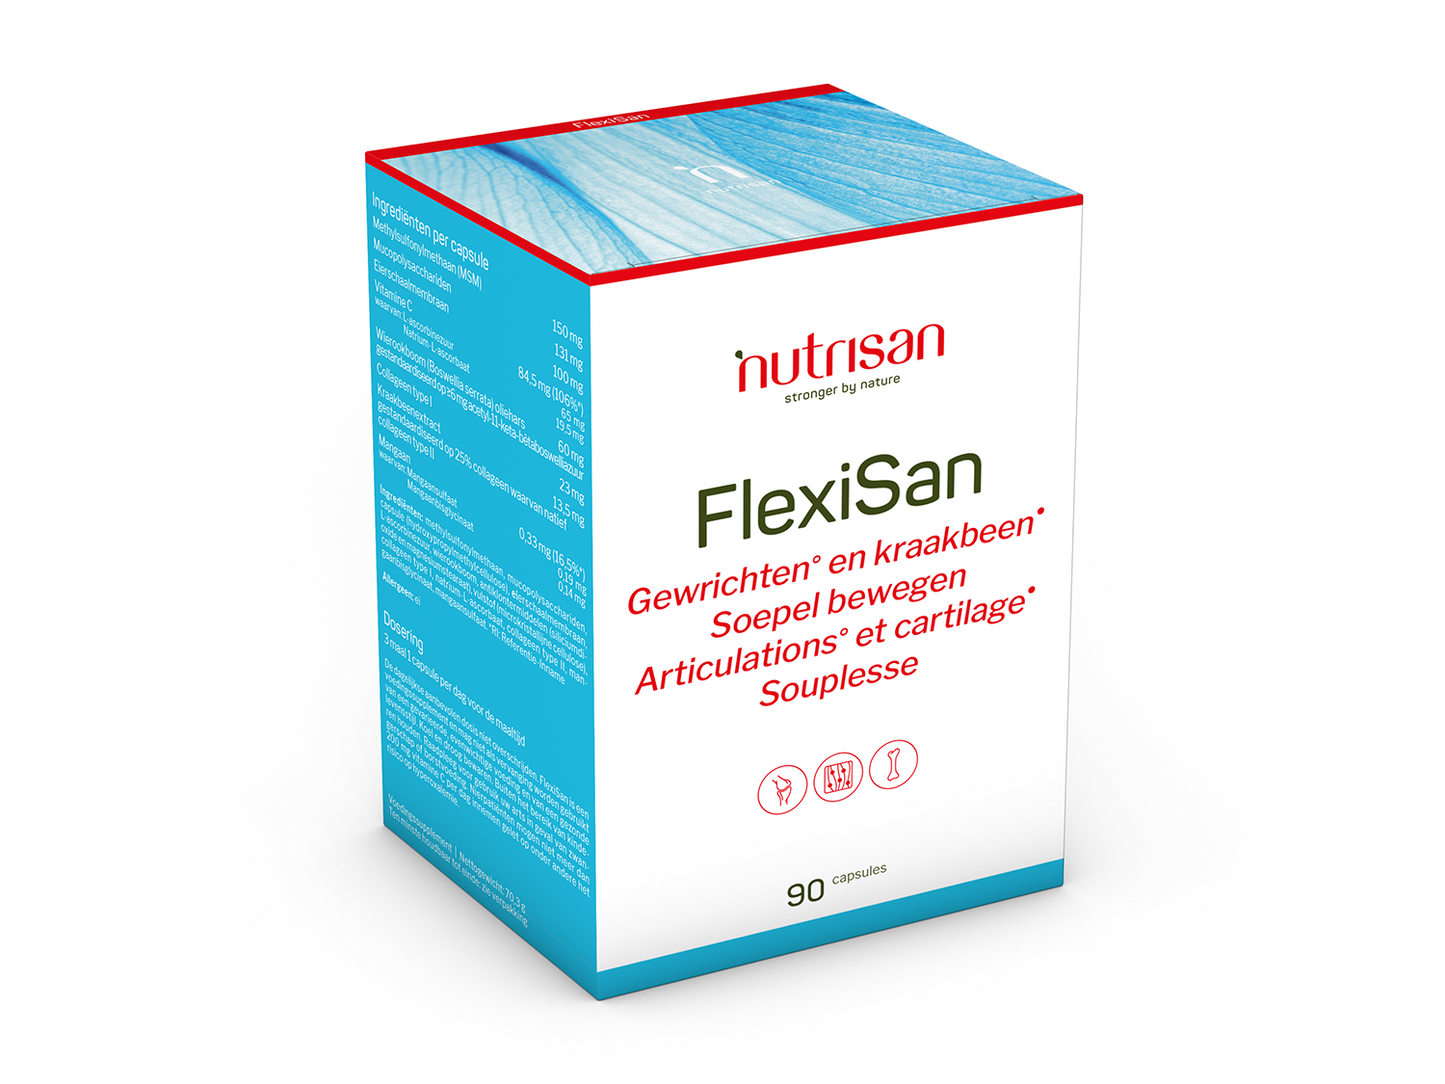 Nutrisan FlexiSan- 90 capsules - Supplement voor gewrichten en kraakbeen